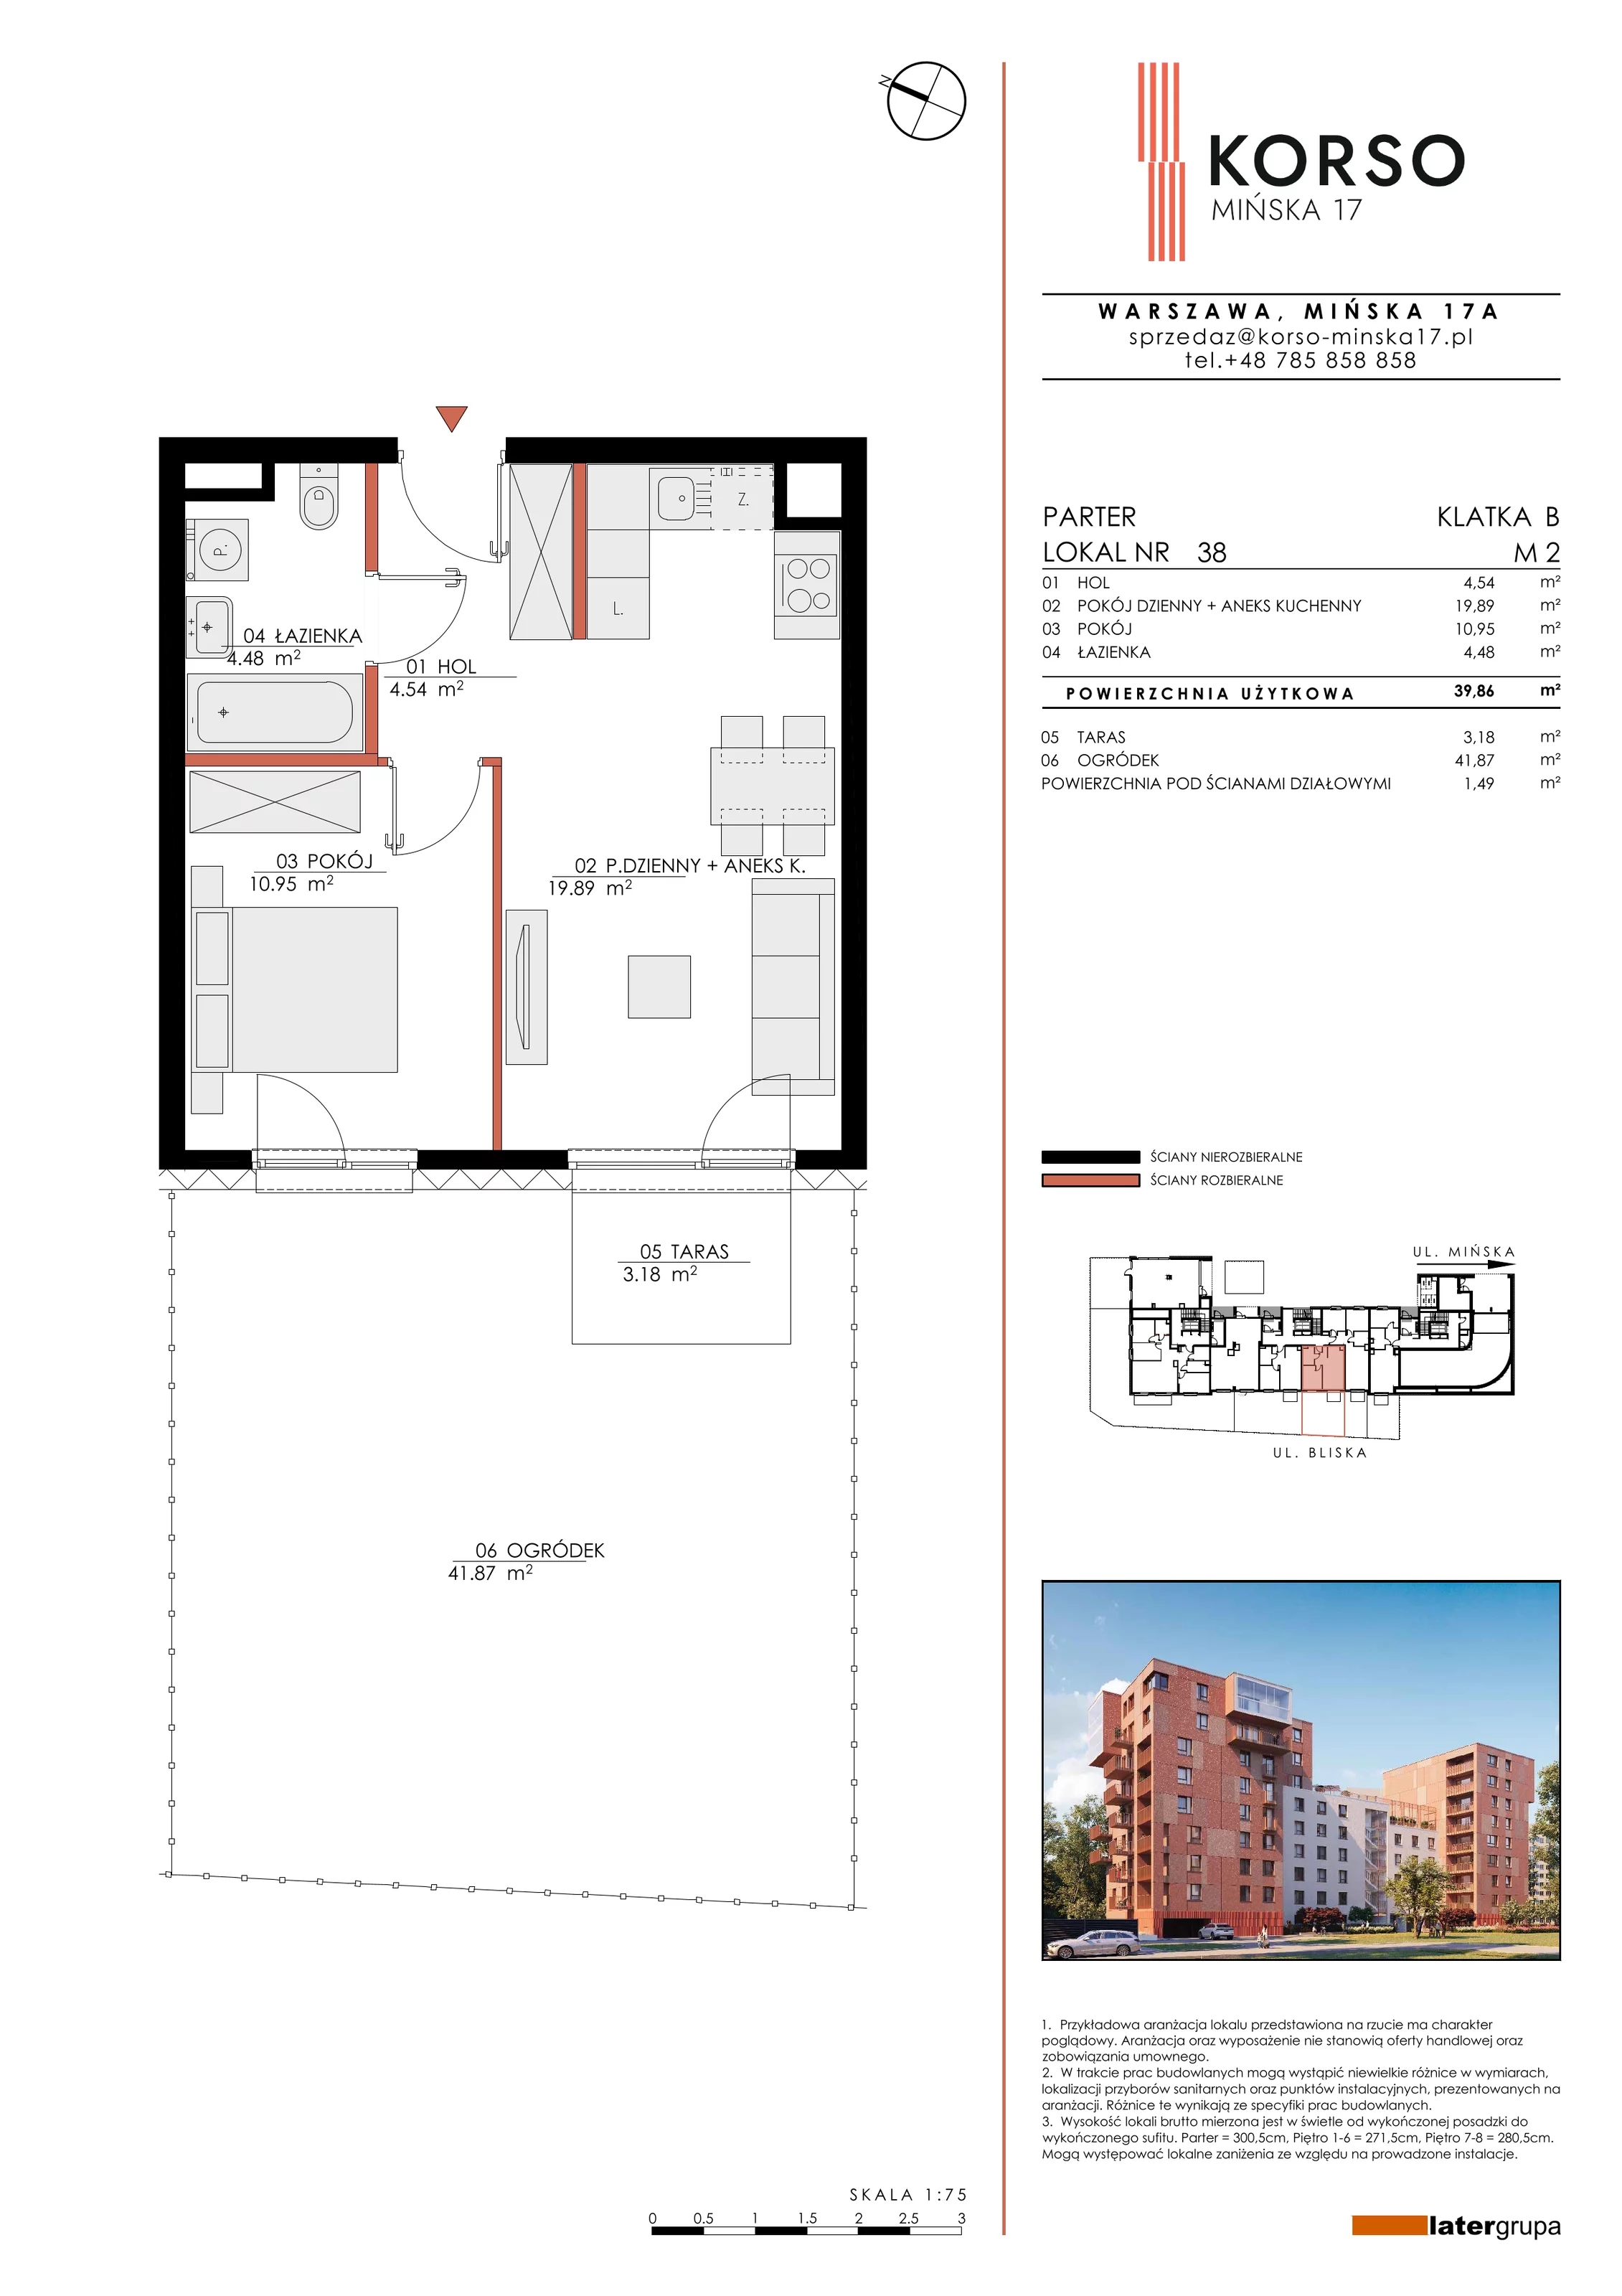 Mieszkanie 39,86 m², parter, oferta nr 38, KORSO Mińska 17, Warszawa, Praga Południe, Kamionek, ul. Mińska 17